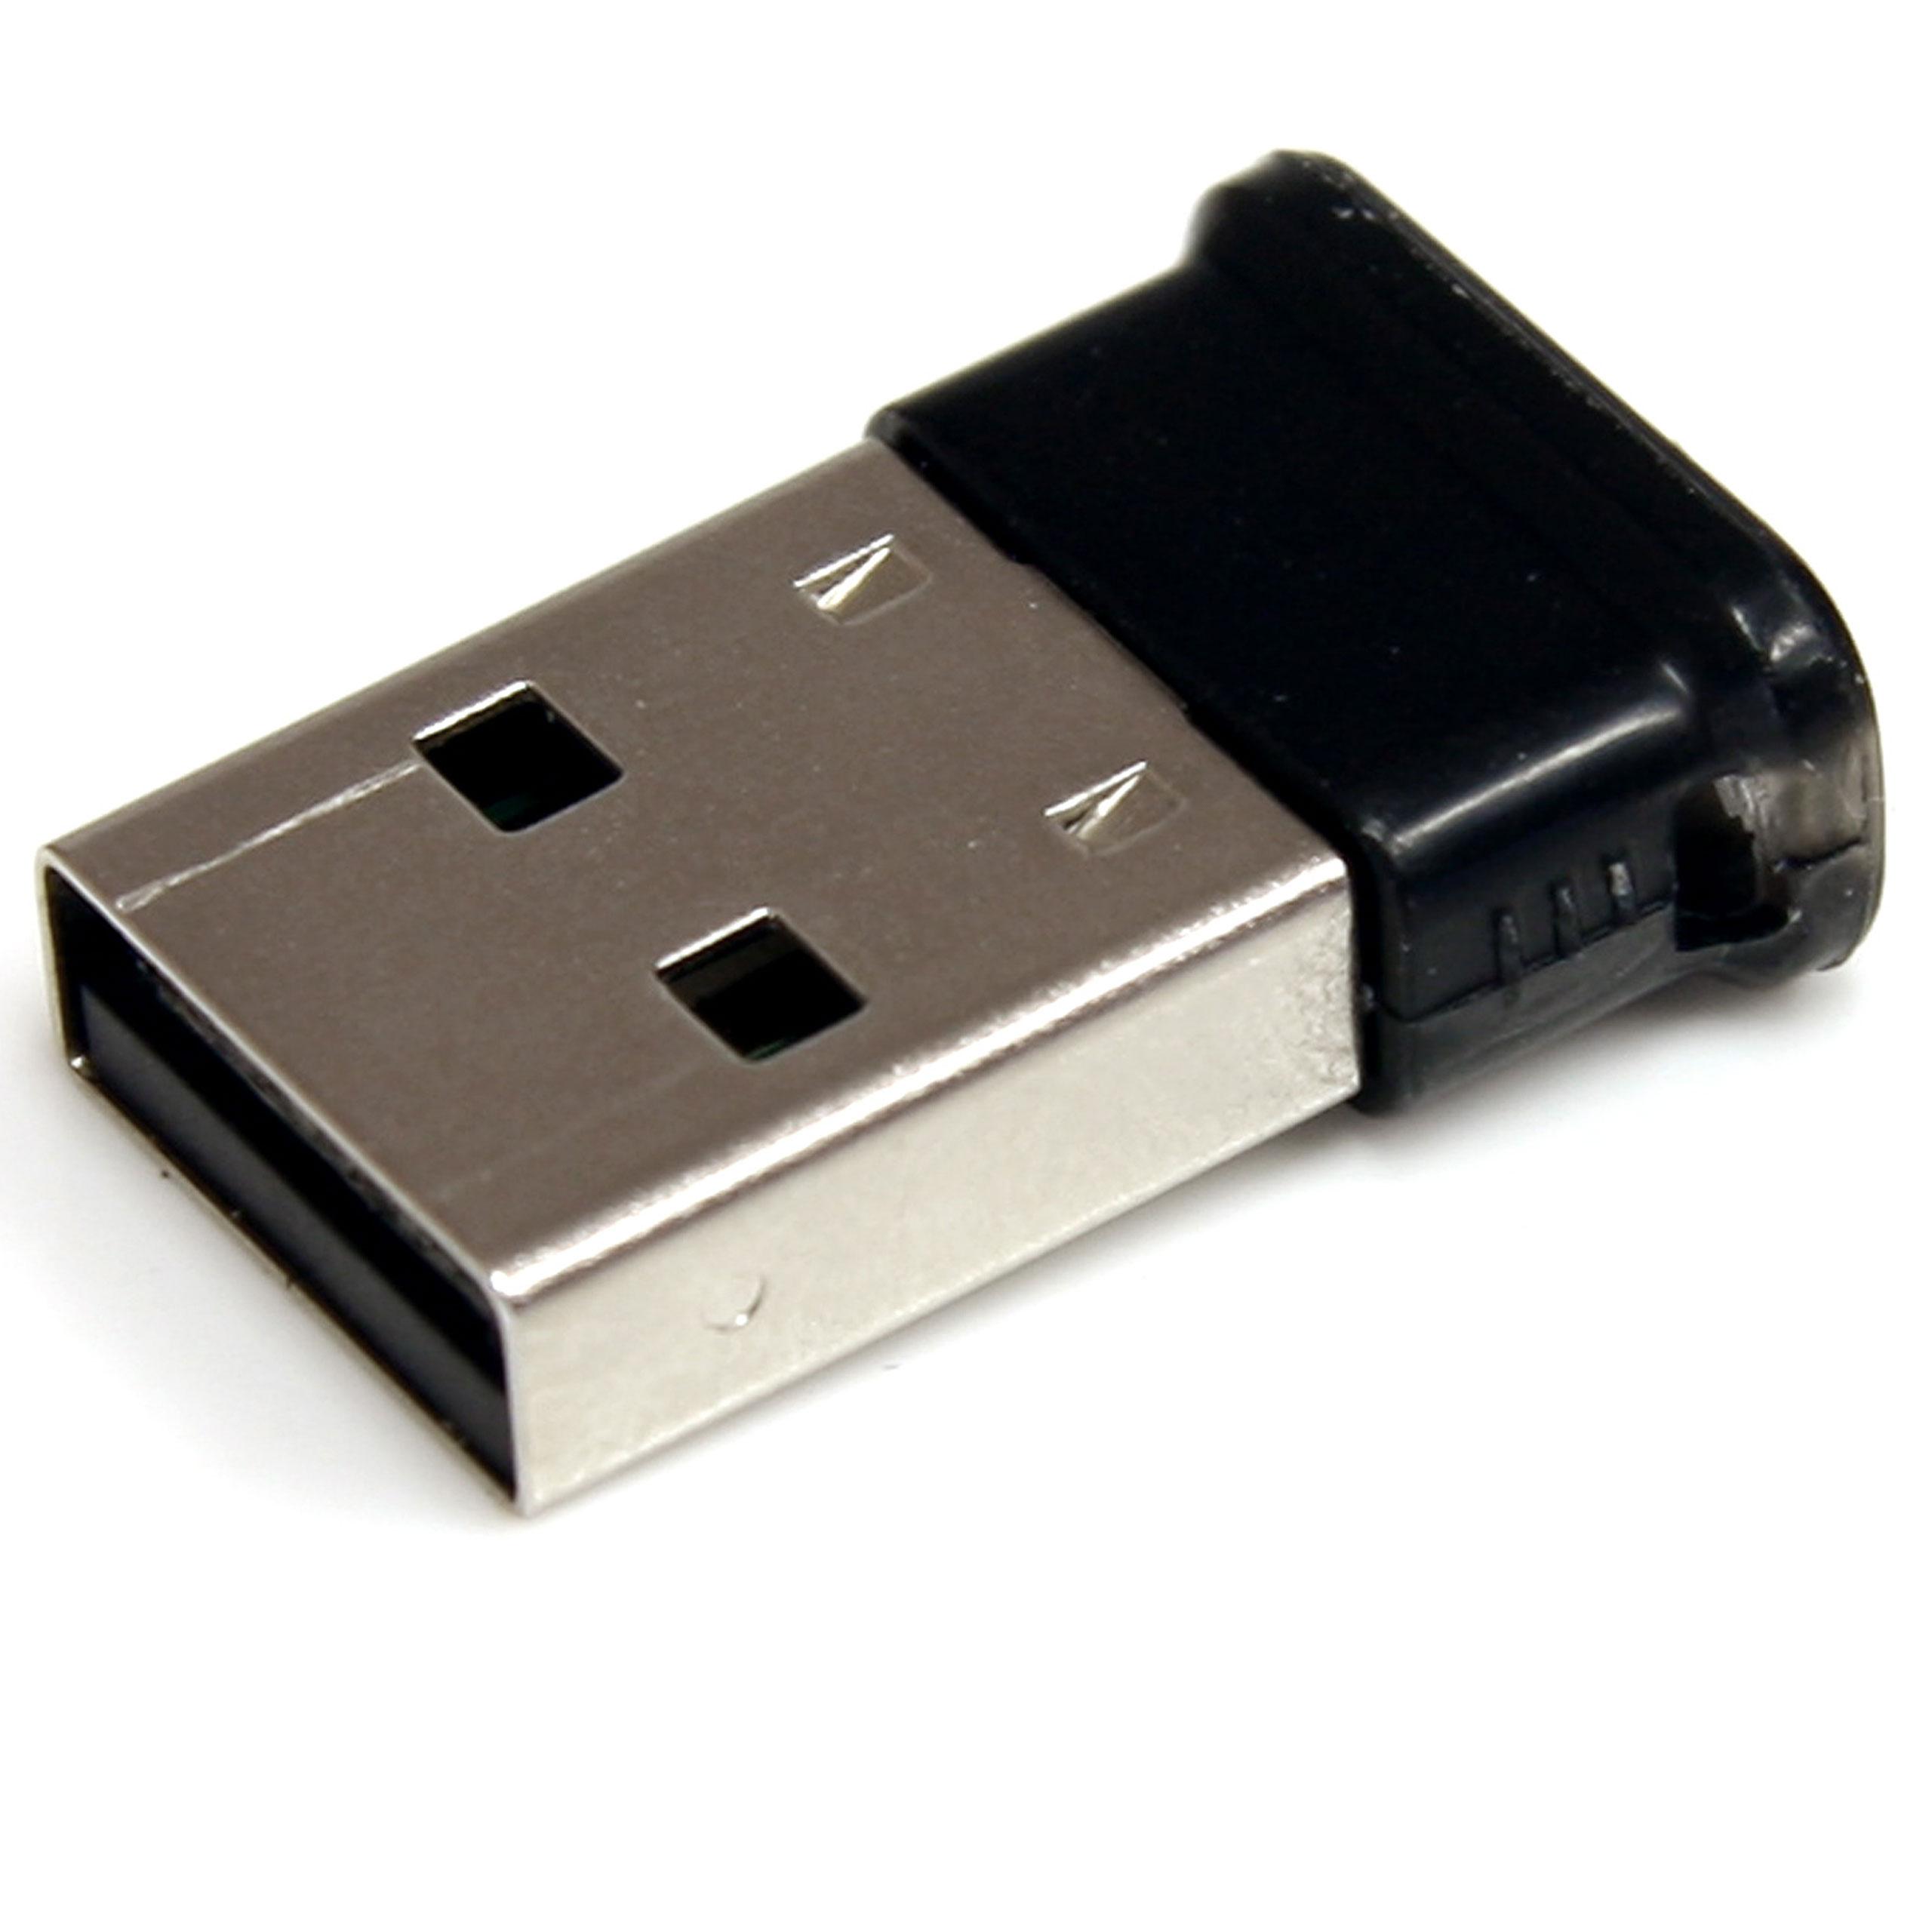 USB Bluetooth adapter options.